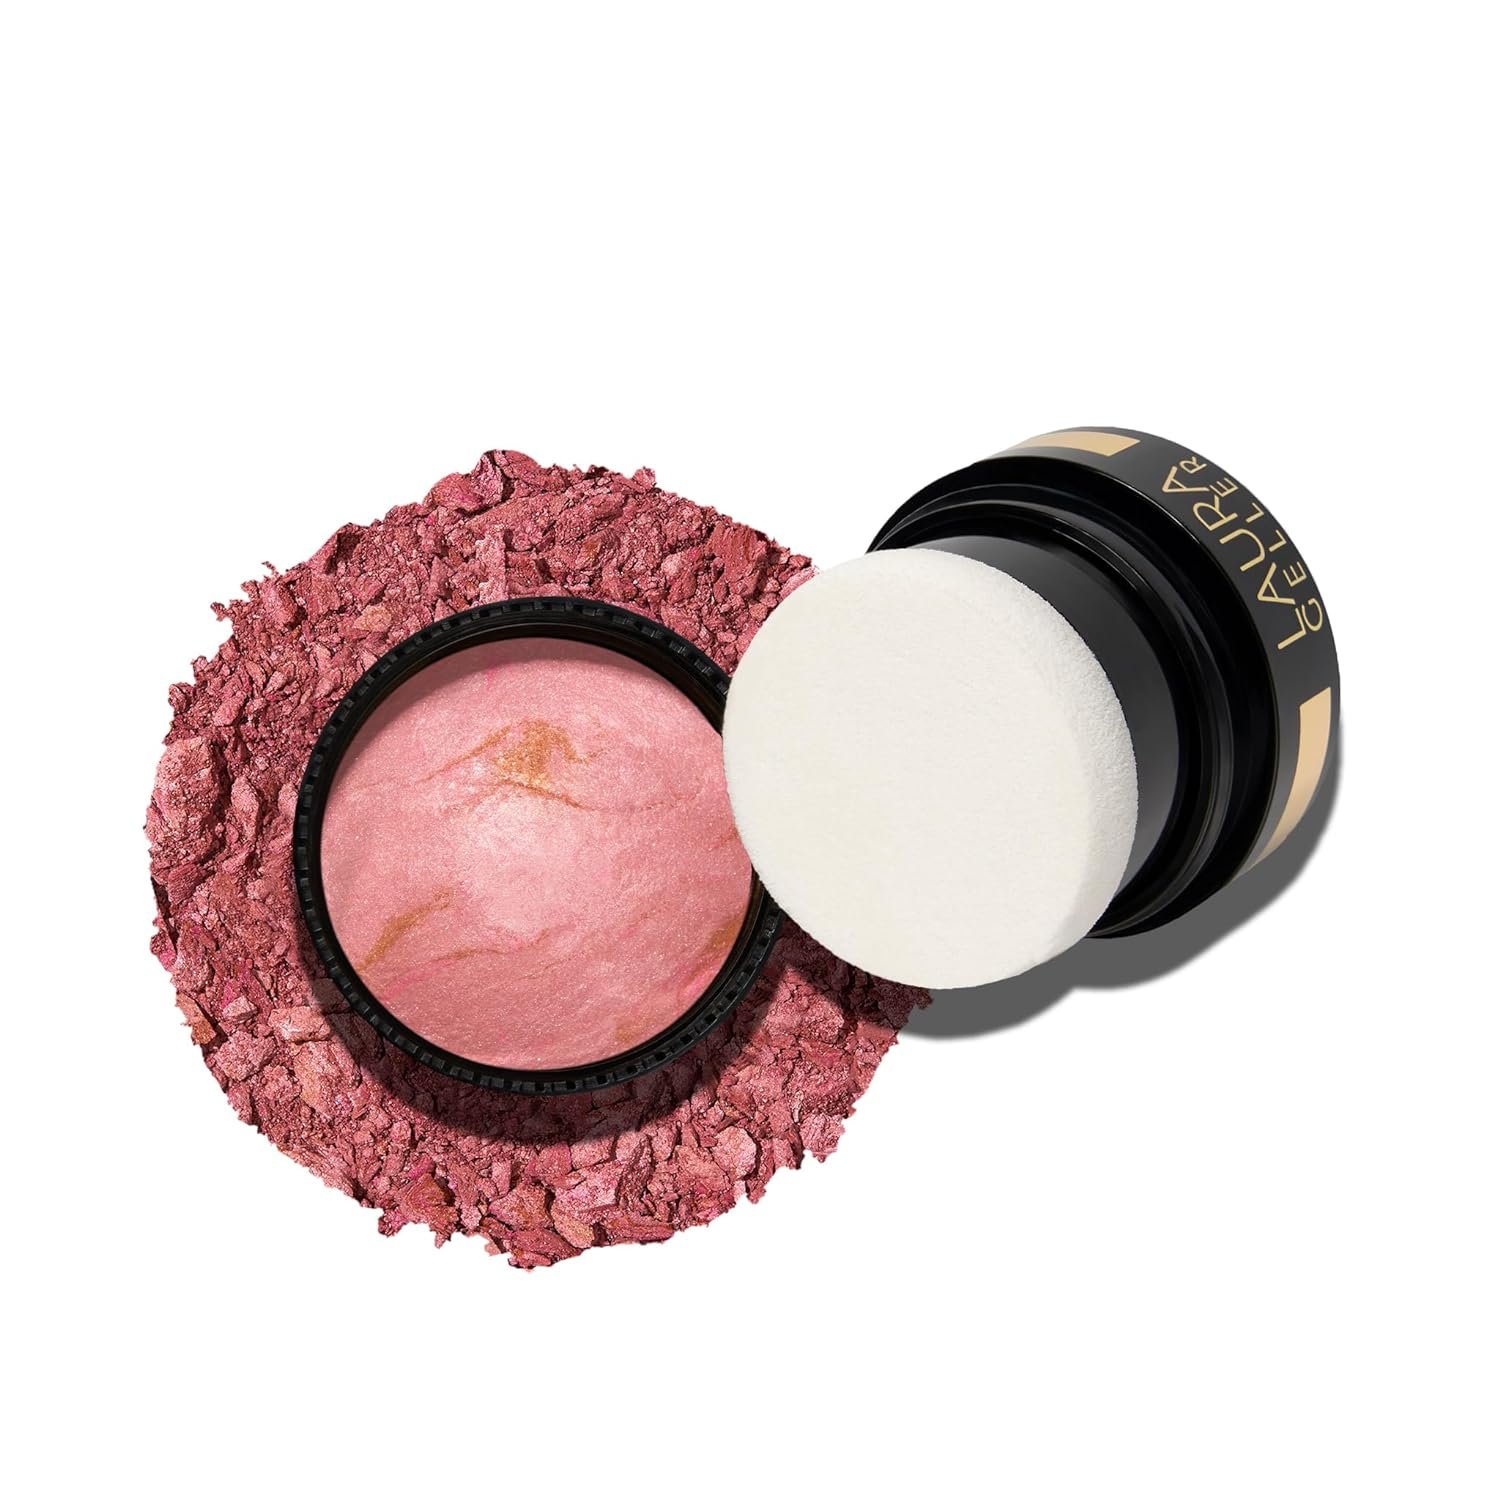 LAURA GELLER NEW YORK Baked Blush-n-Brighten Marbleized Blush- Pink Buttercream Creamy Lightweight Natural Finish